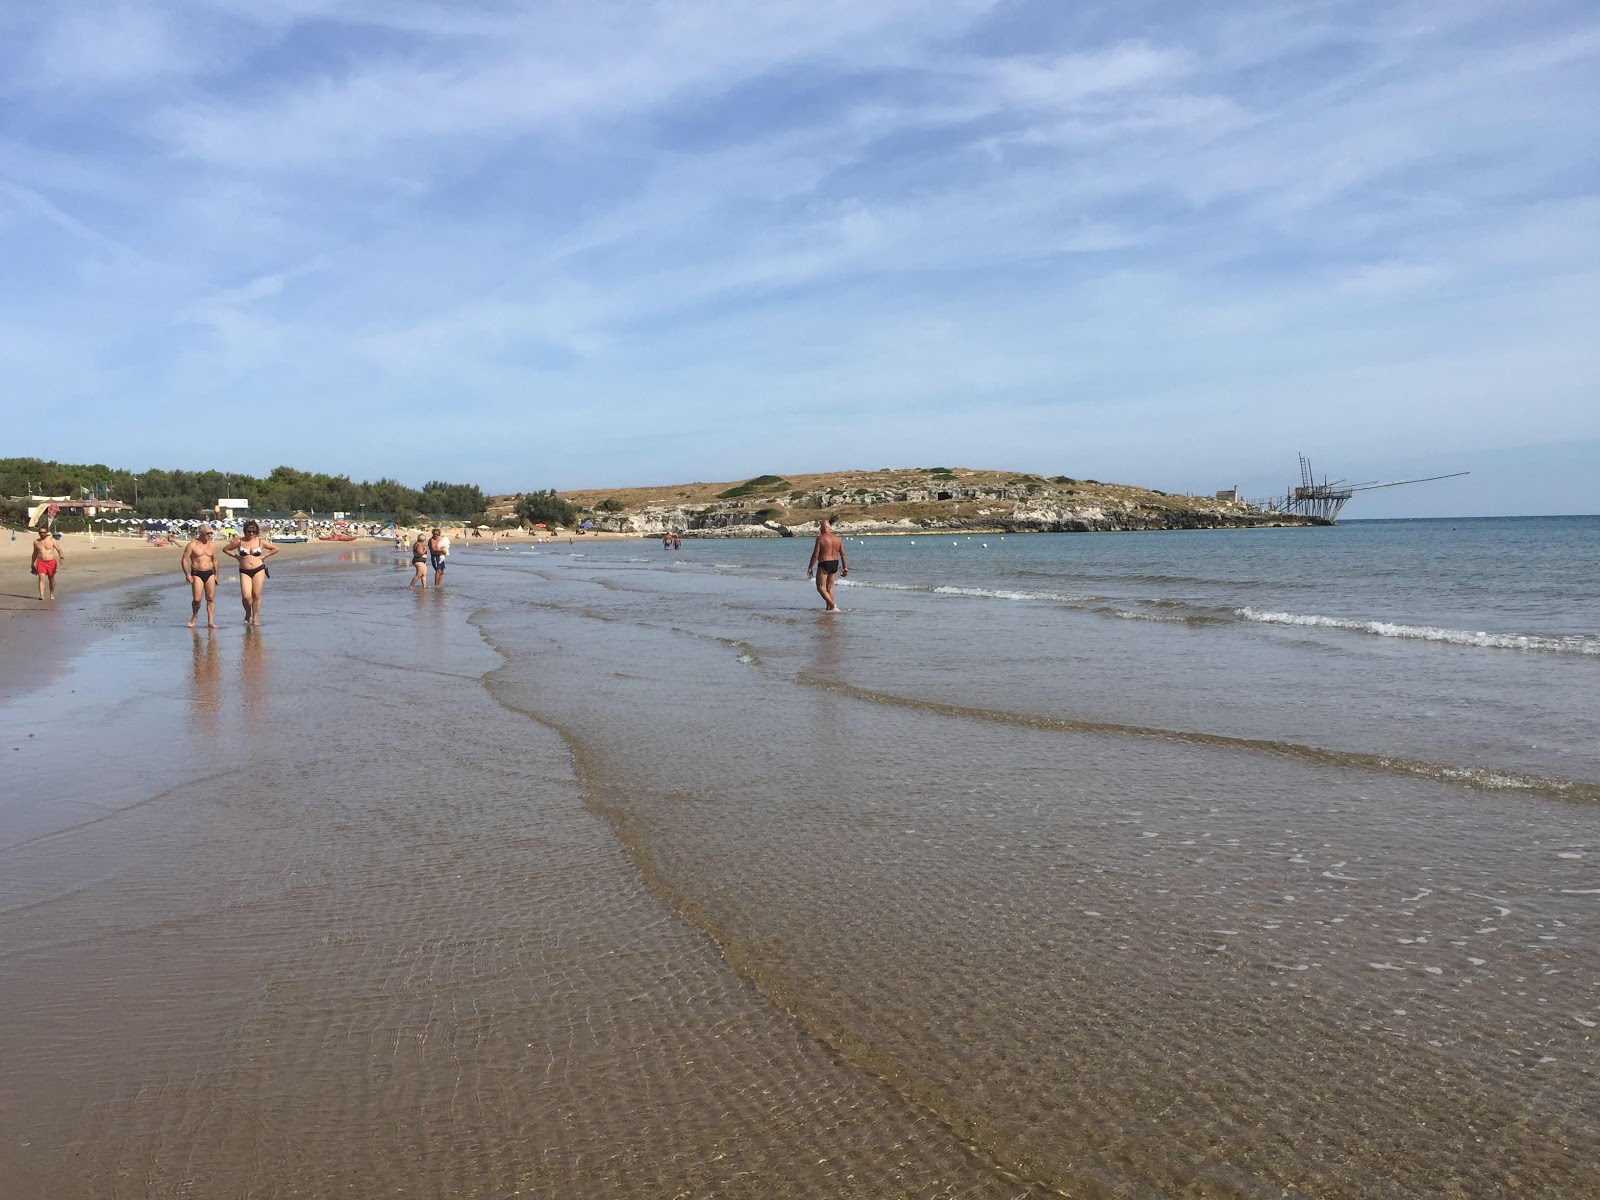 Spiaggia di Molinella'in fotoğrafı i̇nce kahverengi kum yüzey ile